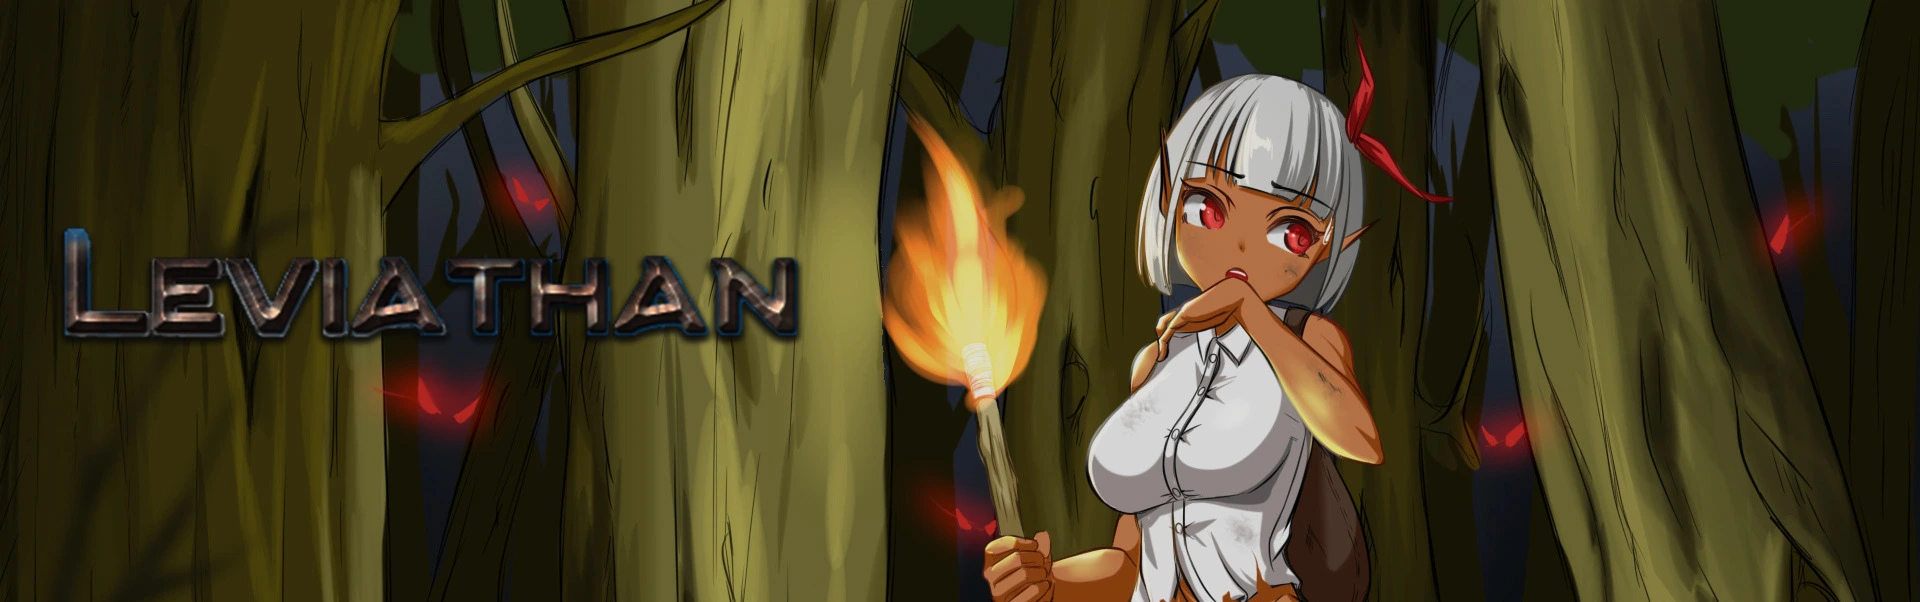 Leviathan ~A Survival RPG~ main image